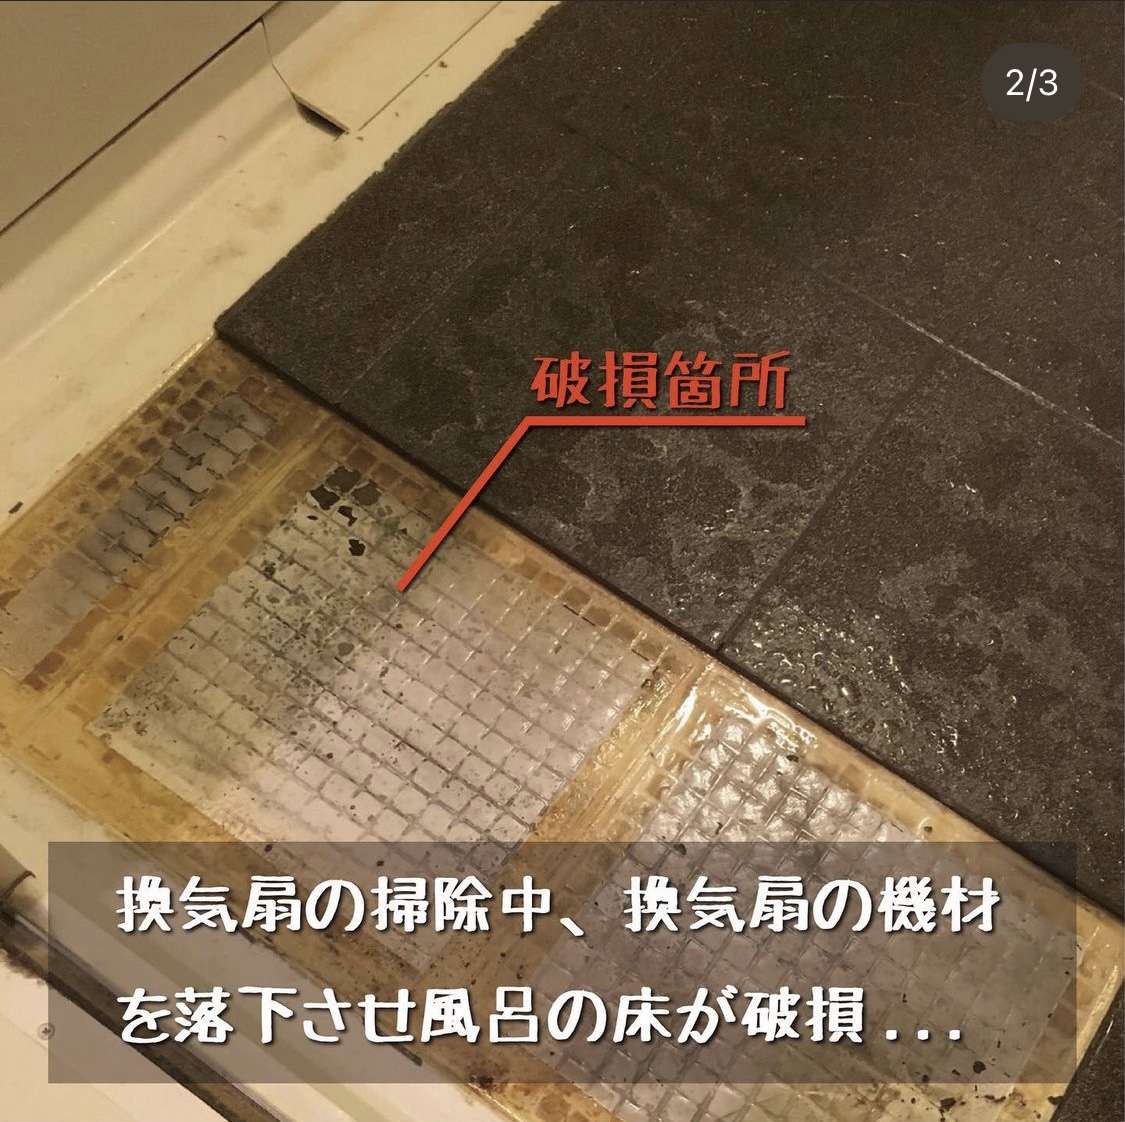 【大阪府】分譲マンションの浴室タイル破損で実費で修理した後だけど申請は出来る？